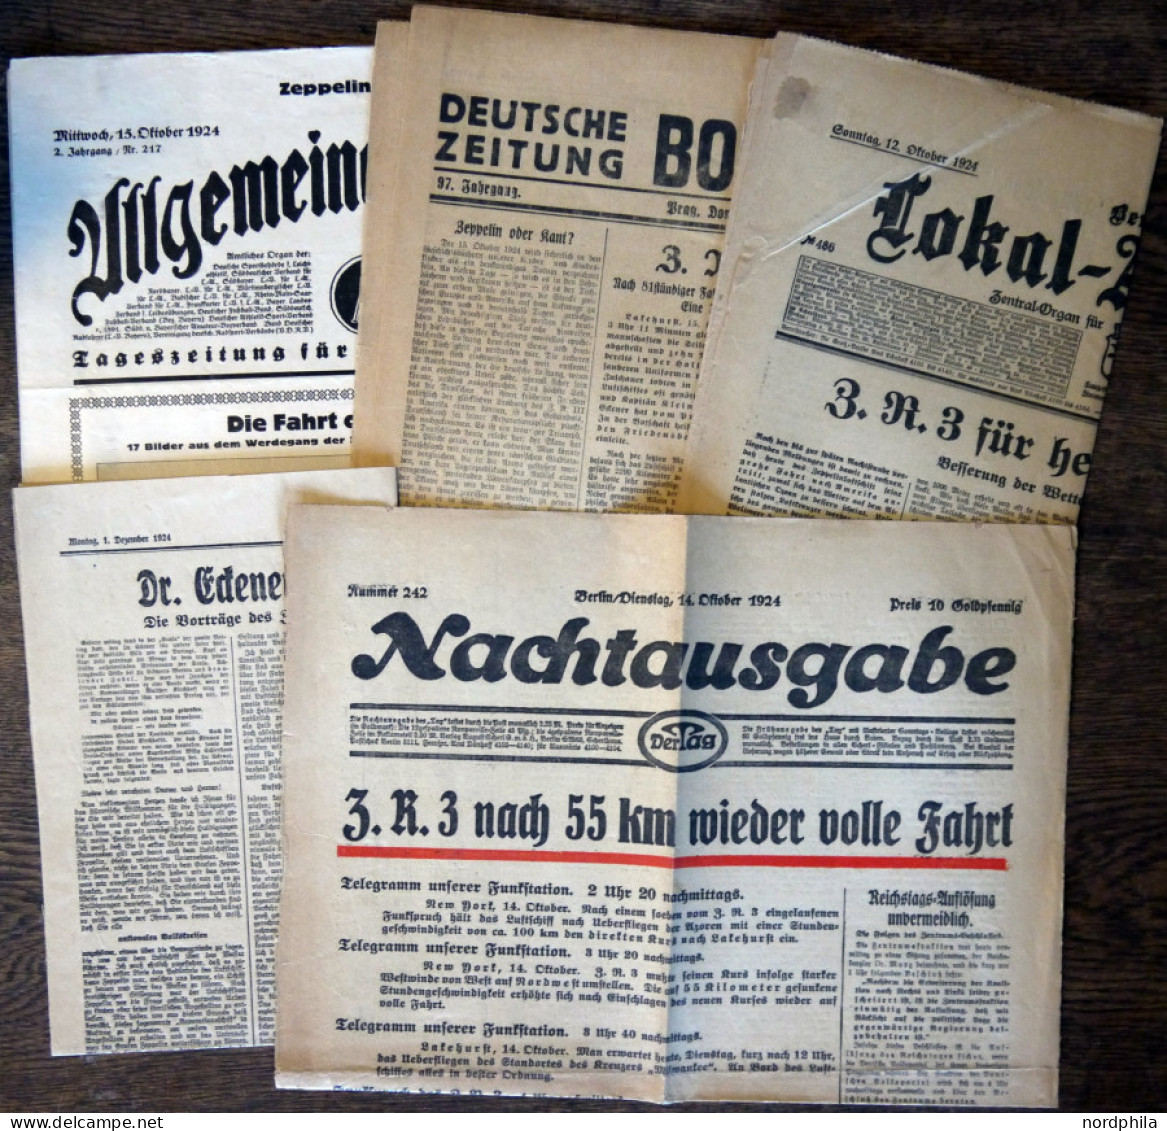 ZEPPELINPOST 1924, Der Legendäre Amerika-Zeppelin ZR 3: 5 Verschiedene Zeitungen Mit Zeppelin-Schlagzeilen - Airmail & Zeppelin